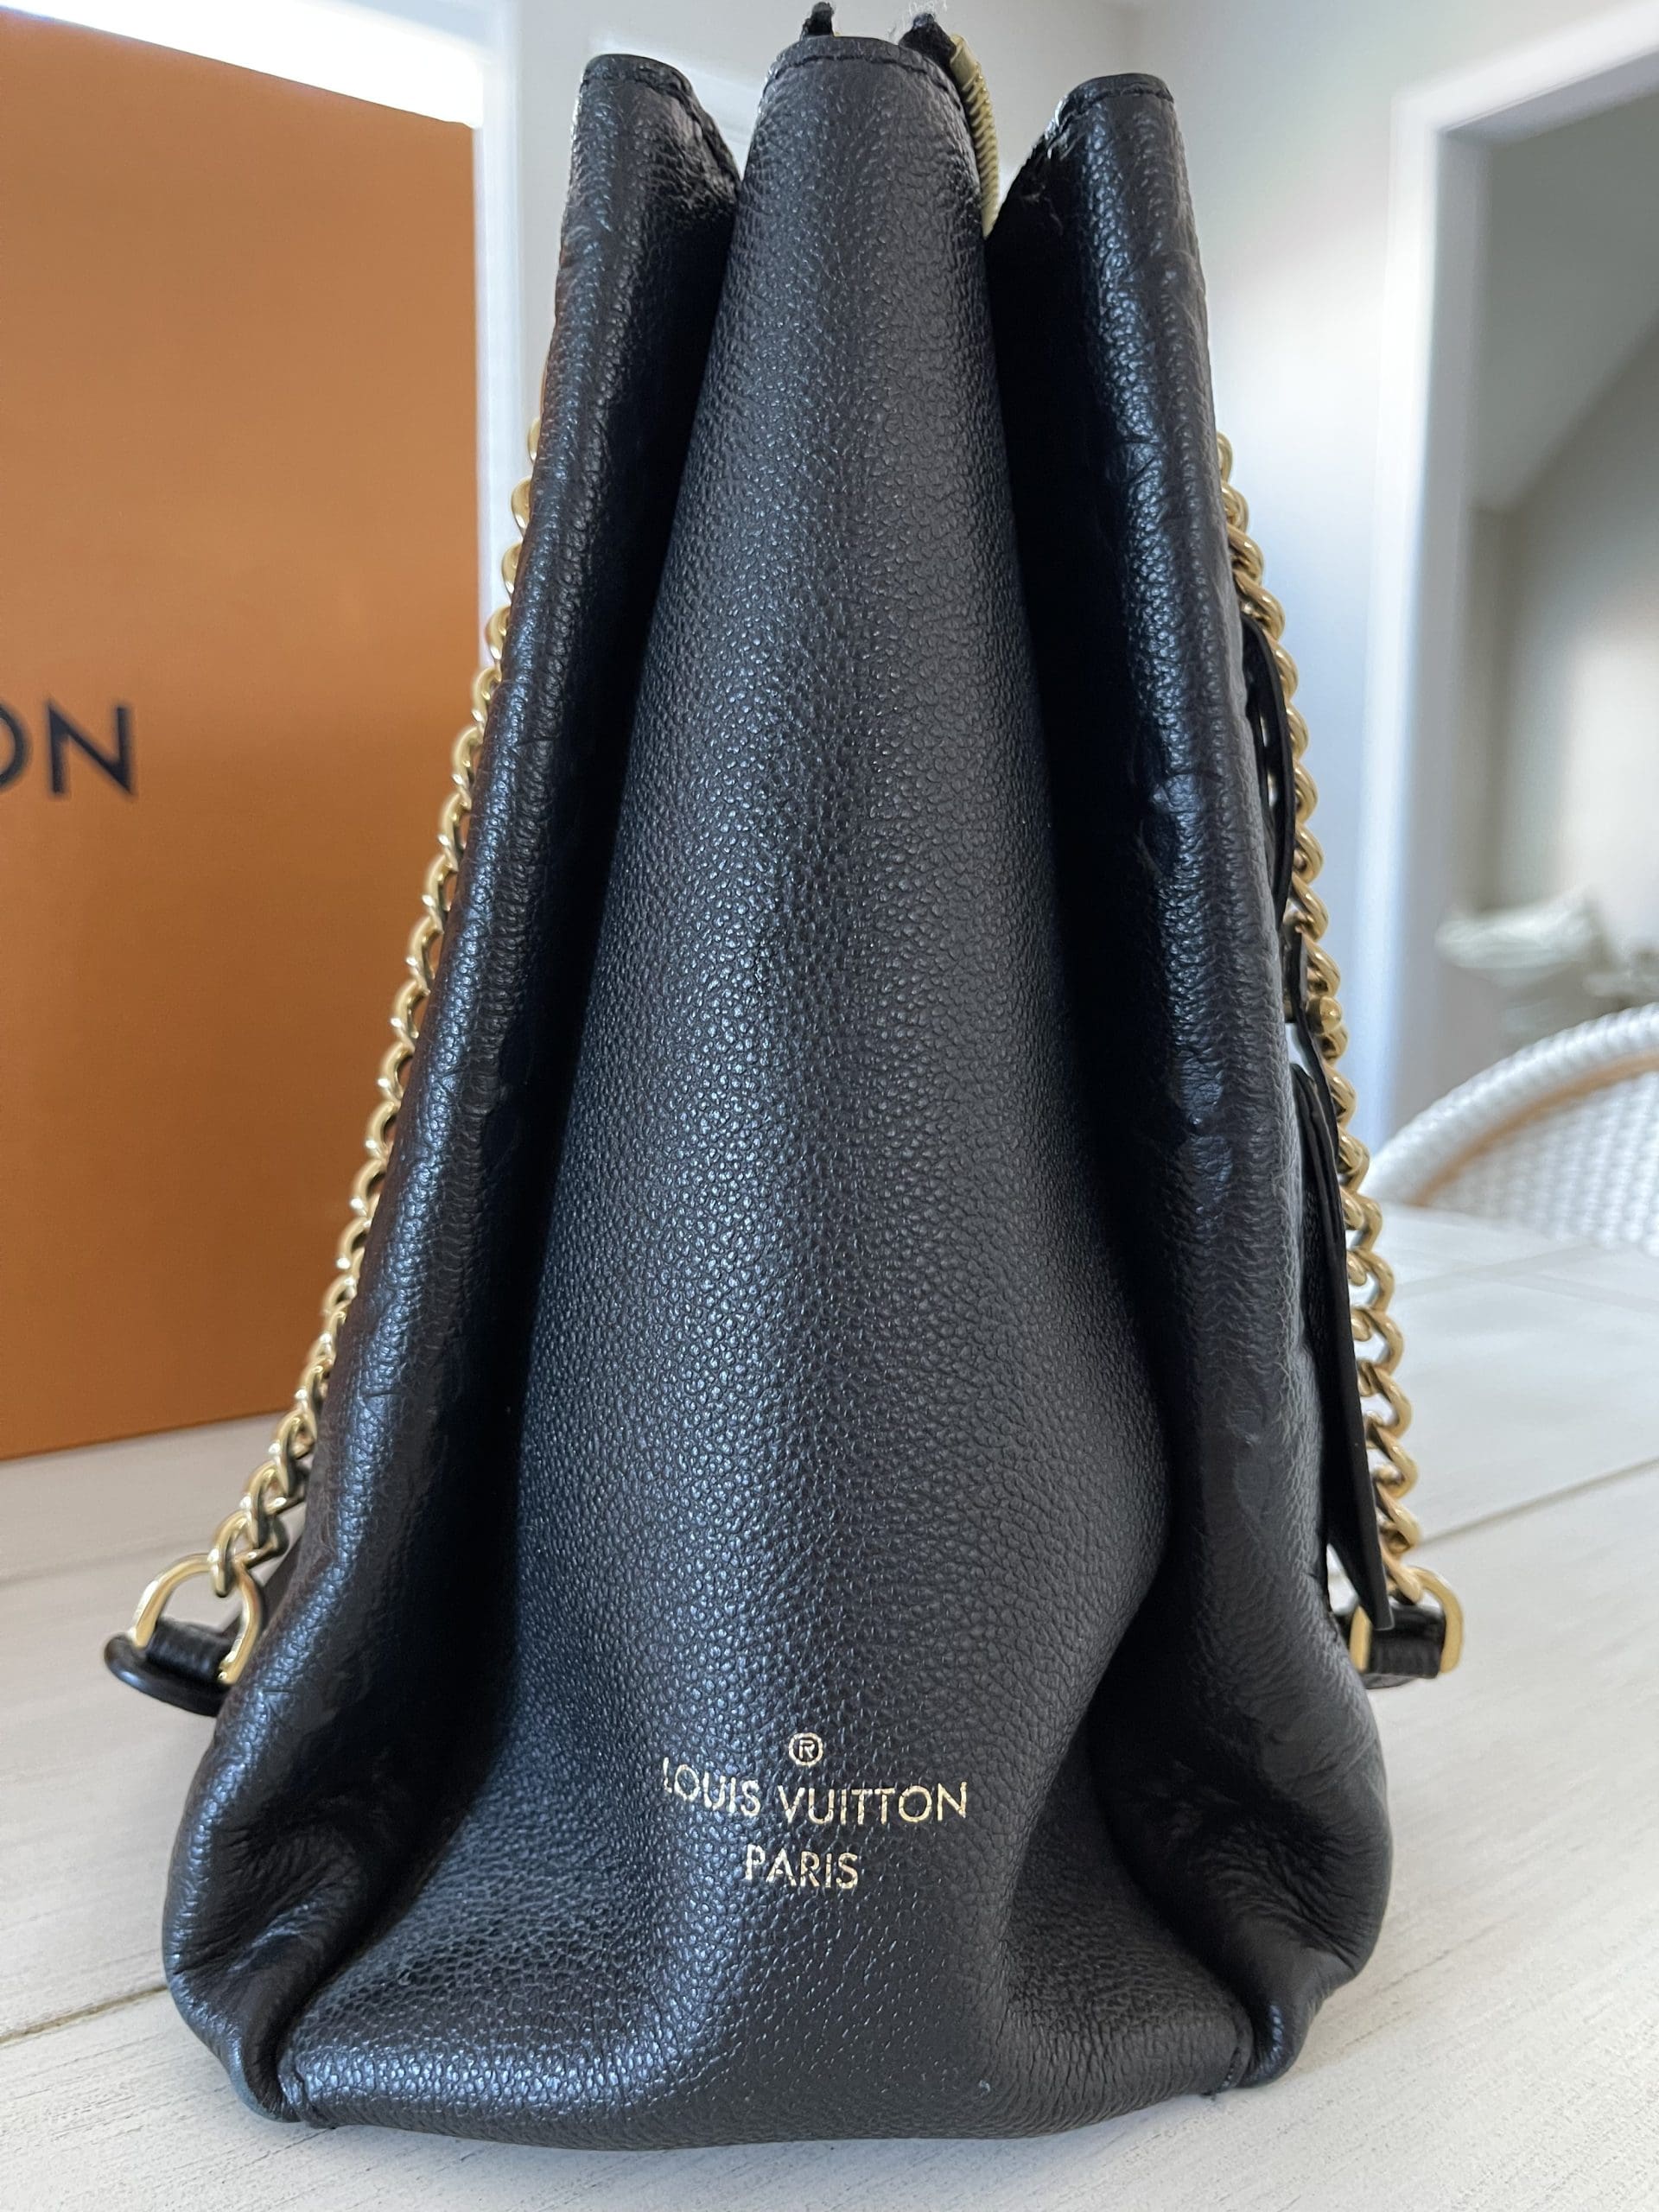 Bag Organizer for Louis Vuitton Nano Speedy - Zoomoni